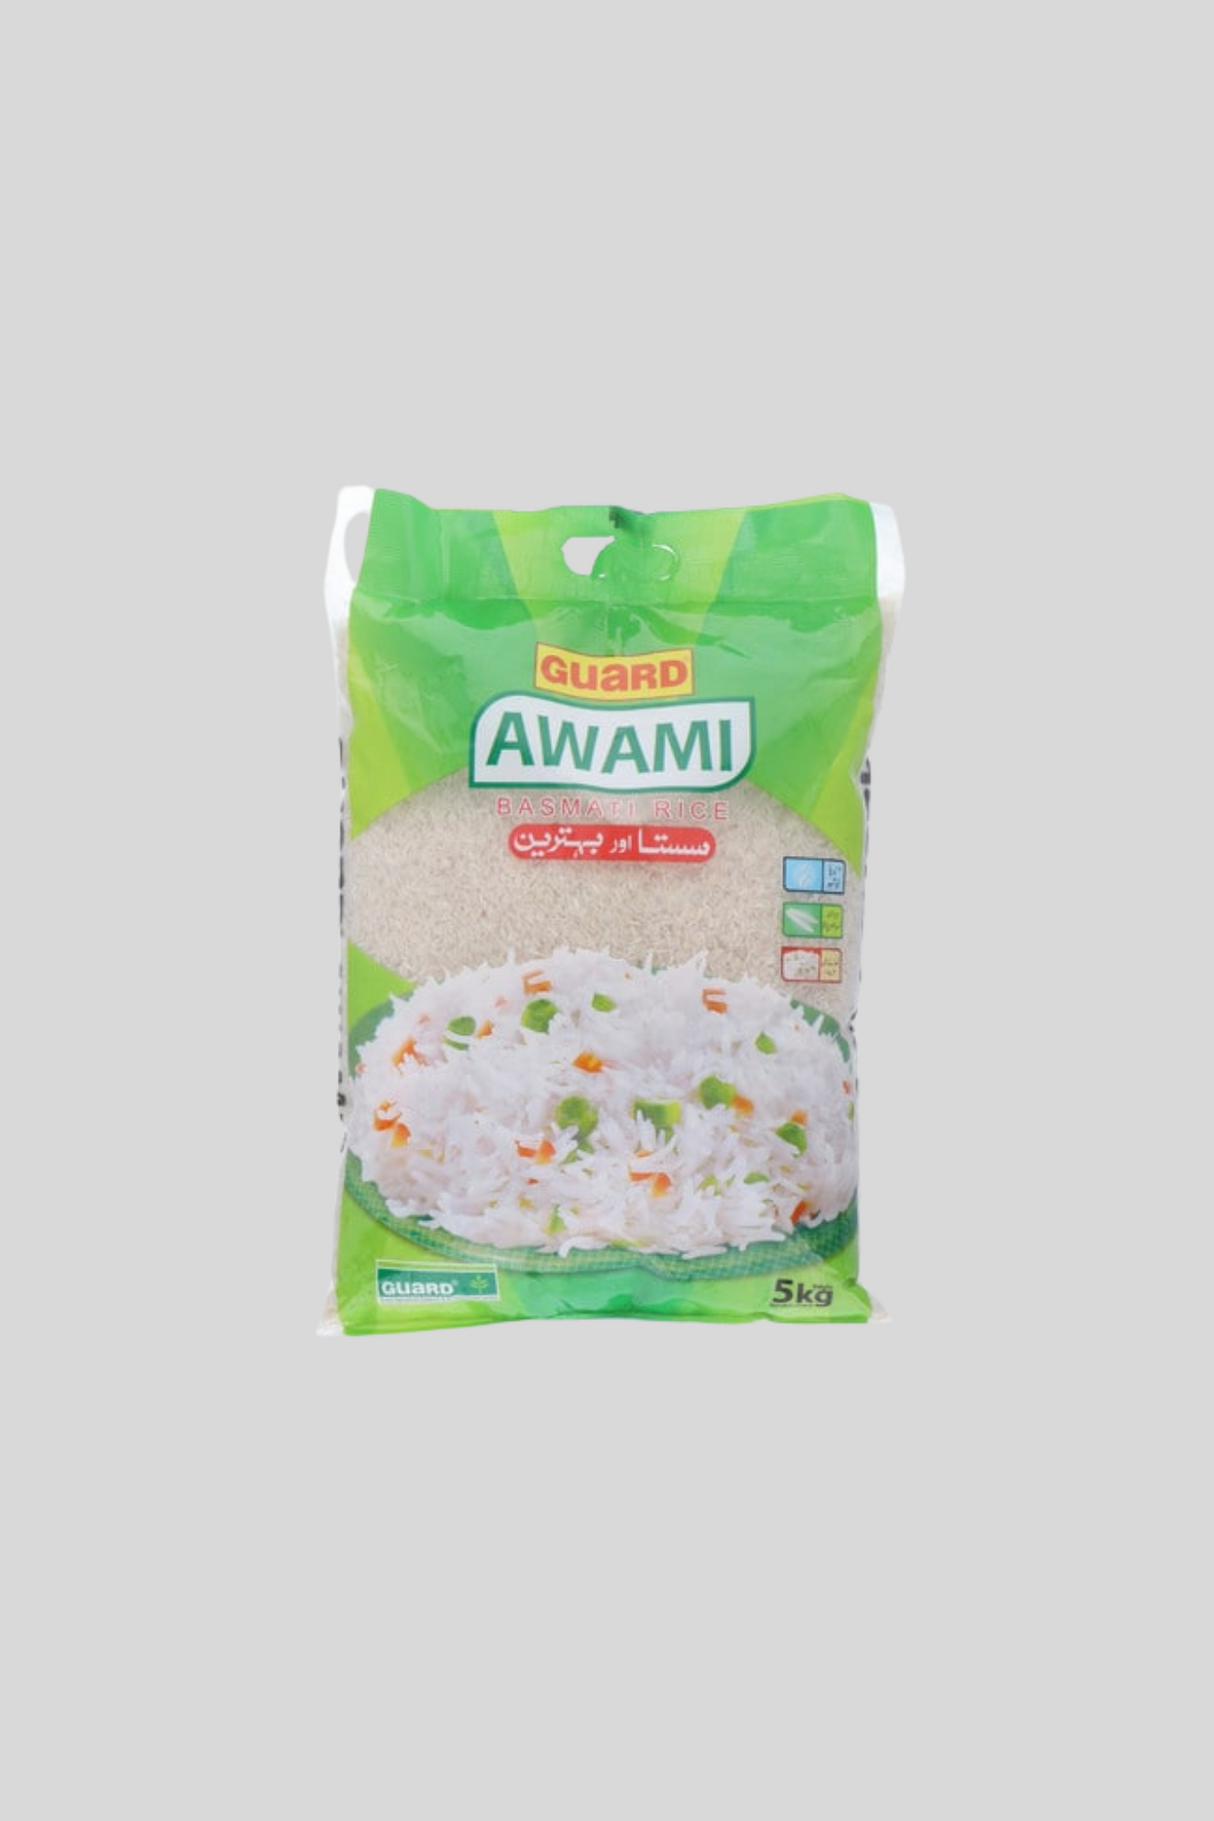 guard awami rice 5kg